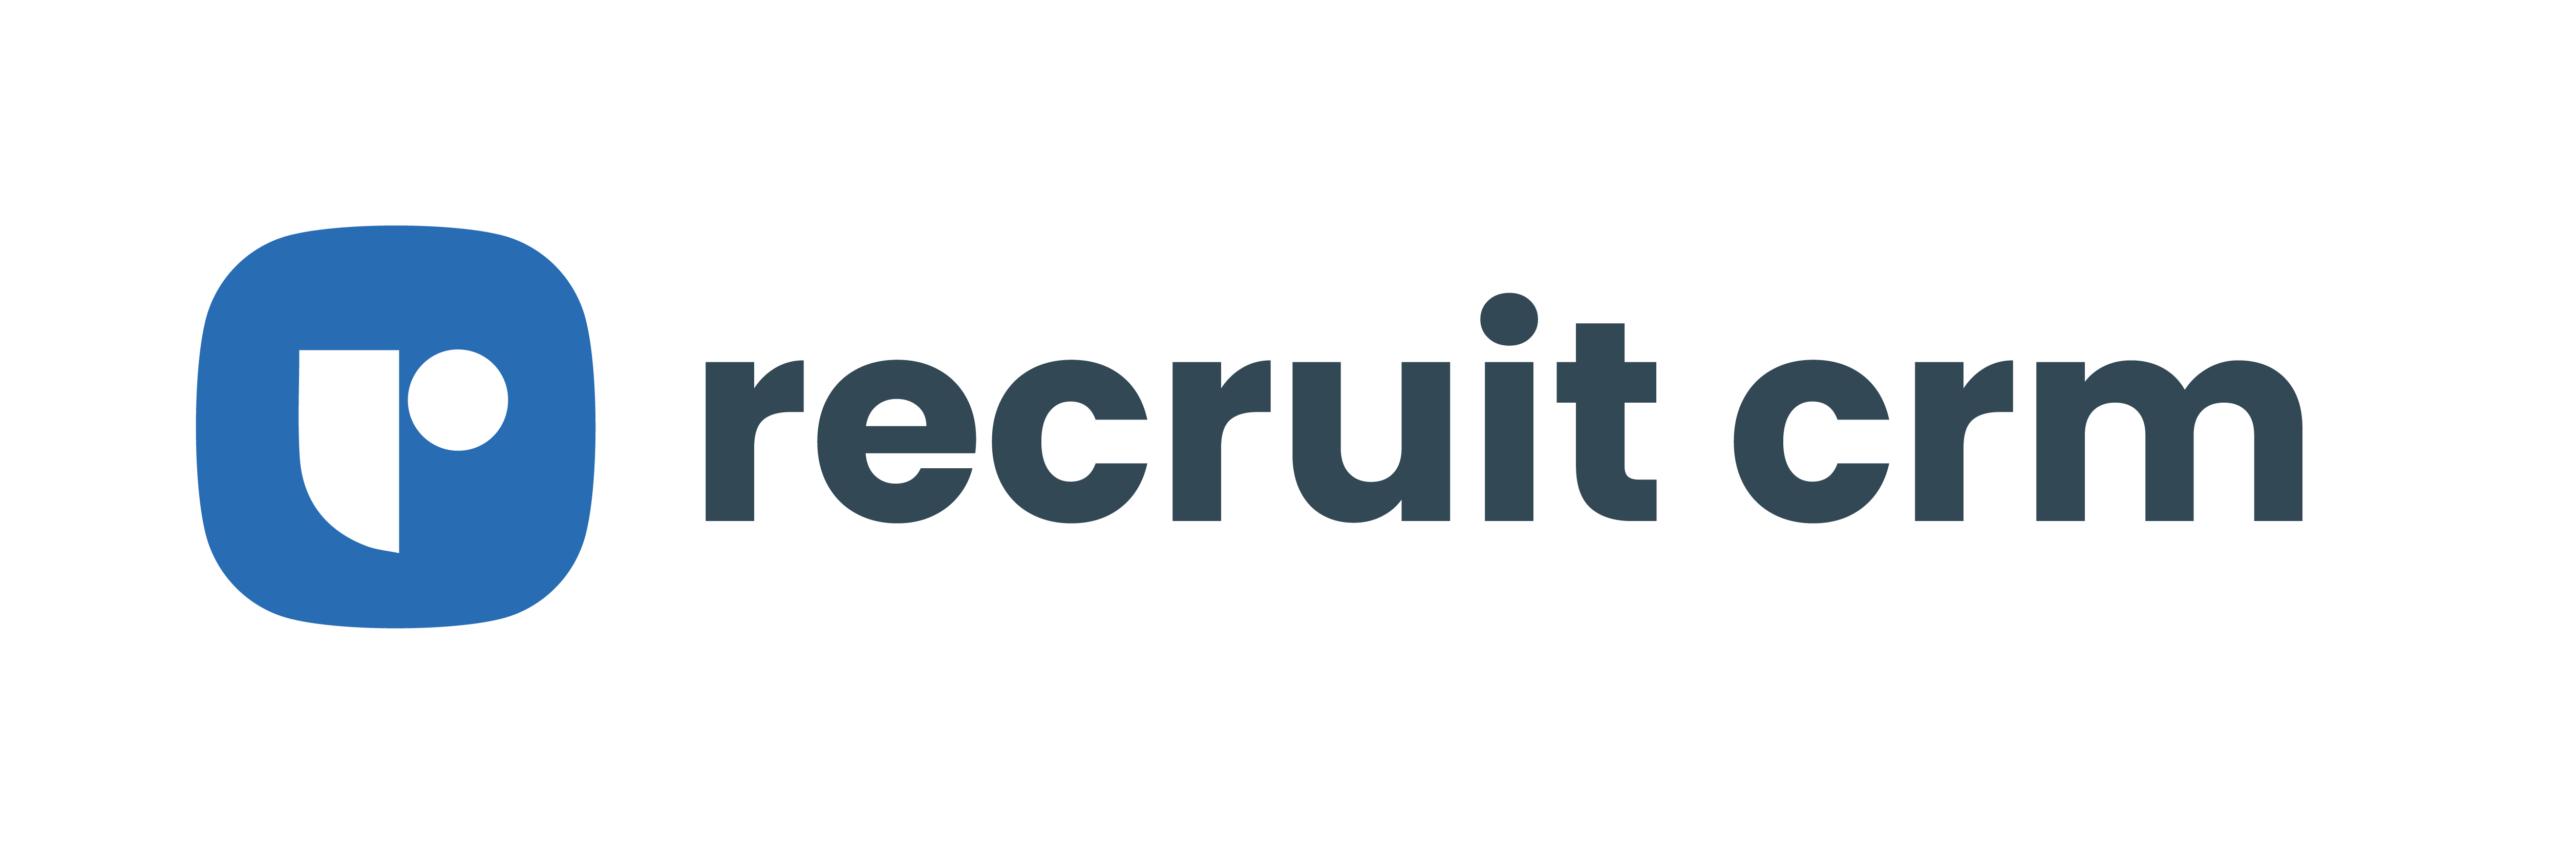 http://Recruit-CRM-full-logo